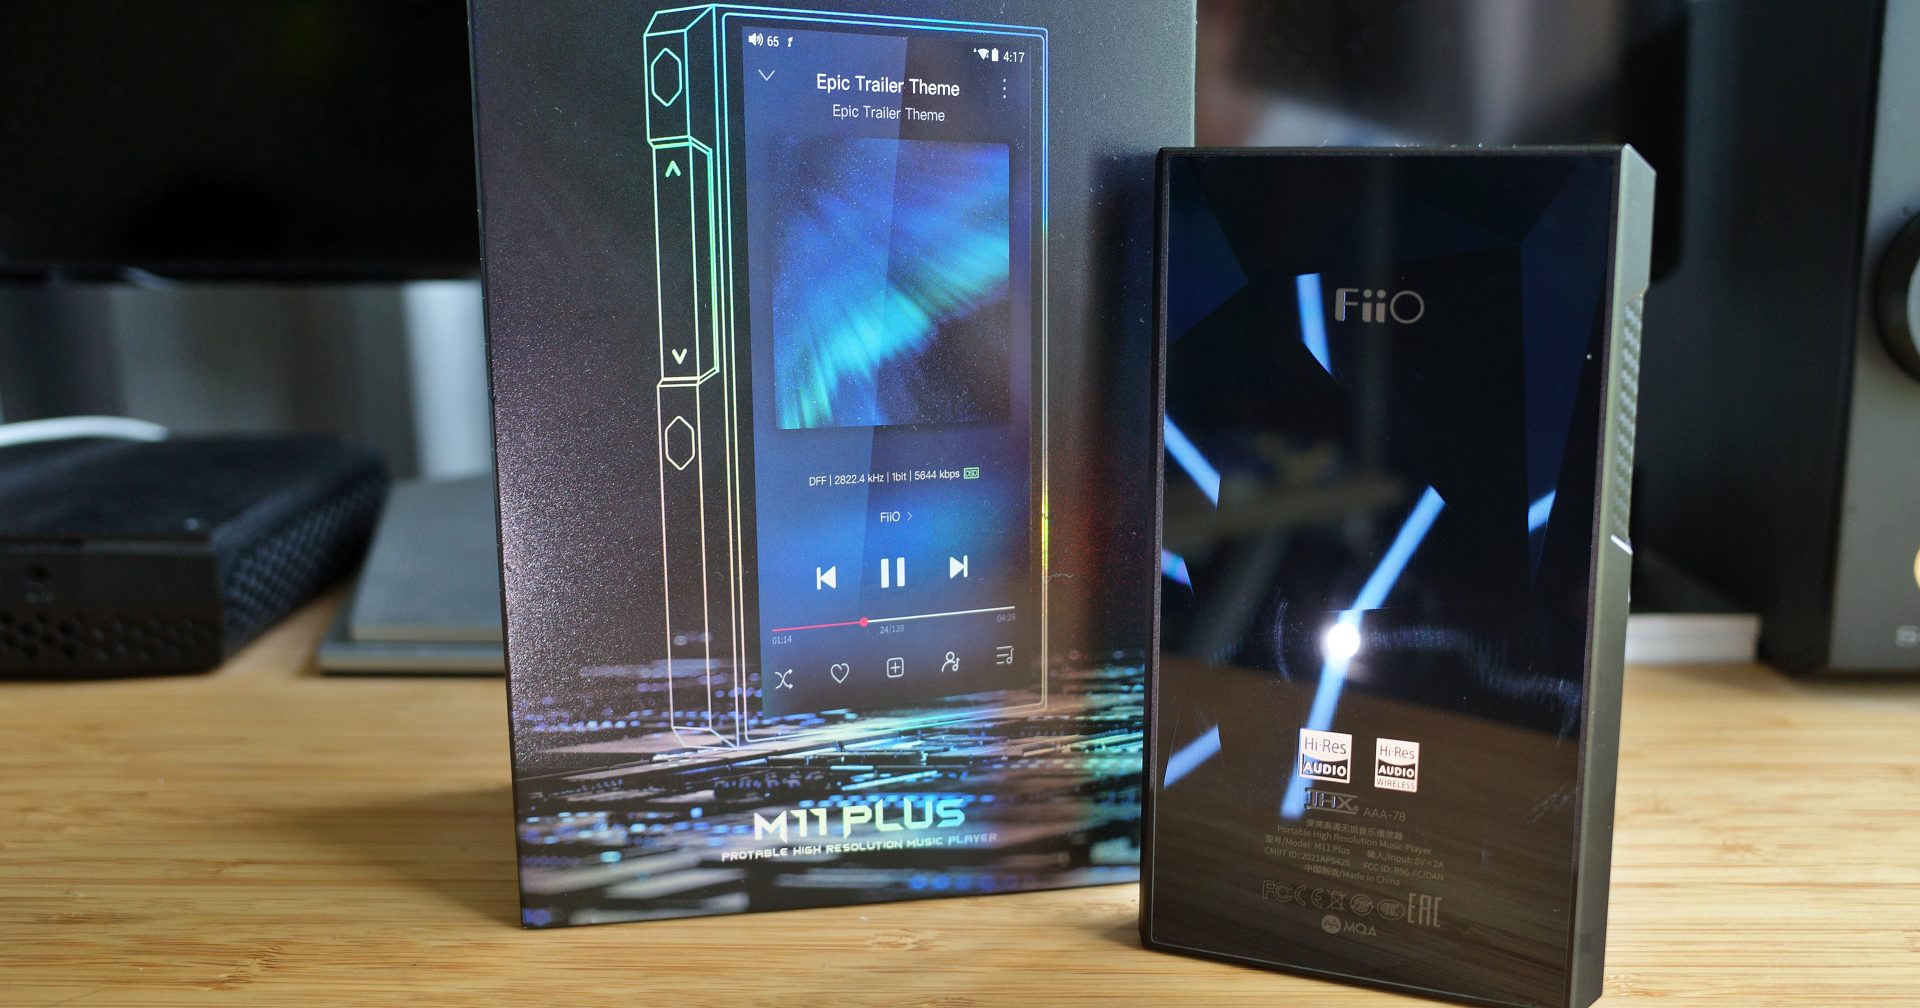 รีวิว FiiO M11 Plus ESS เครื่องเล่นเพลง Android รุ่นกลาง ความสามารถครบๆ